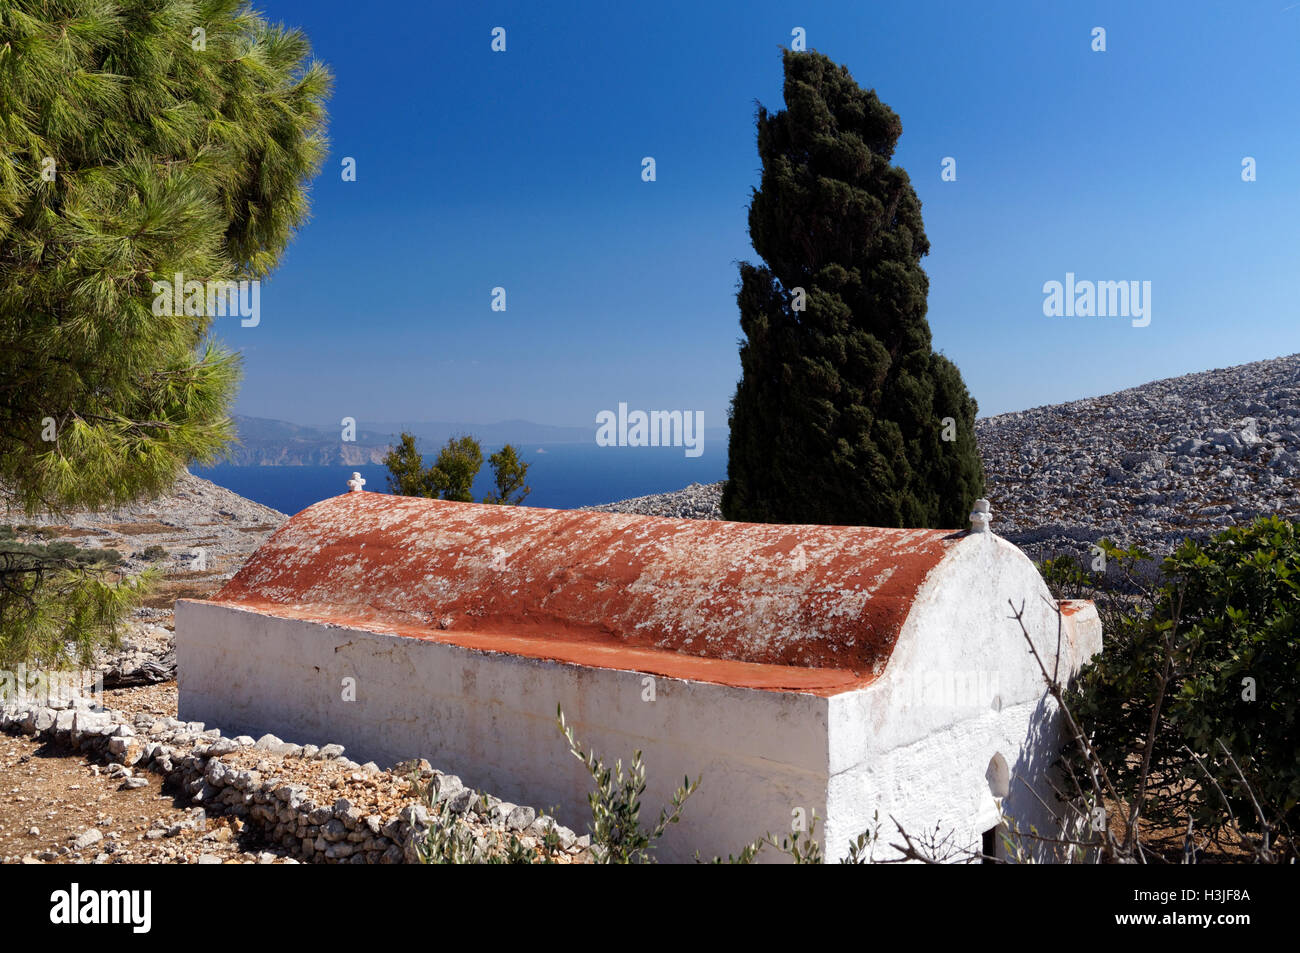 Monastero di Aghios Gianis Konda, in alto nell'entroterra montuoso dell'isola di Chalki, isole del Dodecaneso, Grecia. Foto Stock